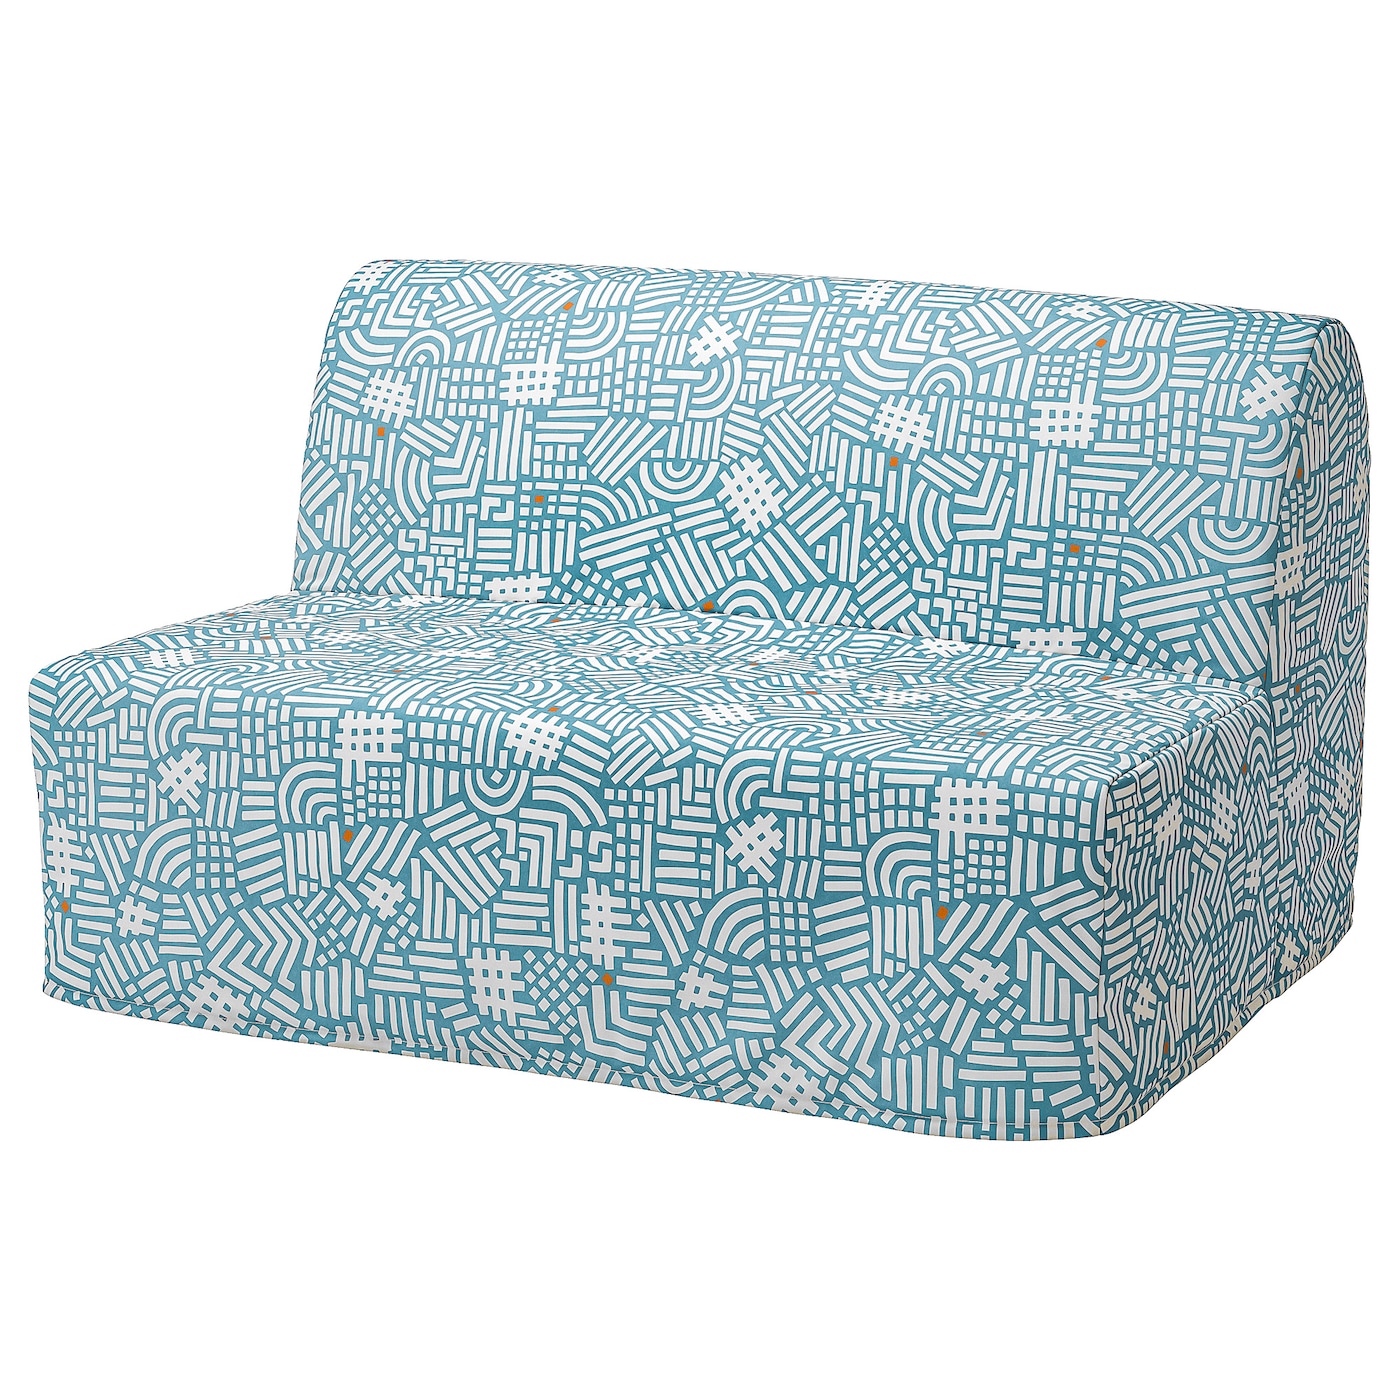 мультяшный матрас ленивый диван кровать подходит для детей татами маты креативный маленький диван кровать стул современная мебель для ЛИКСЕЛЕ МУРБО 2 раскладных дивана-кровати, Тутстад разноцветный LYCKSELE MURBO IKEA